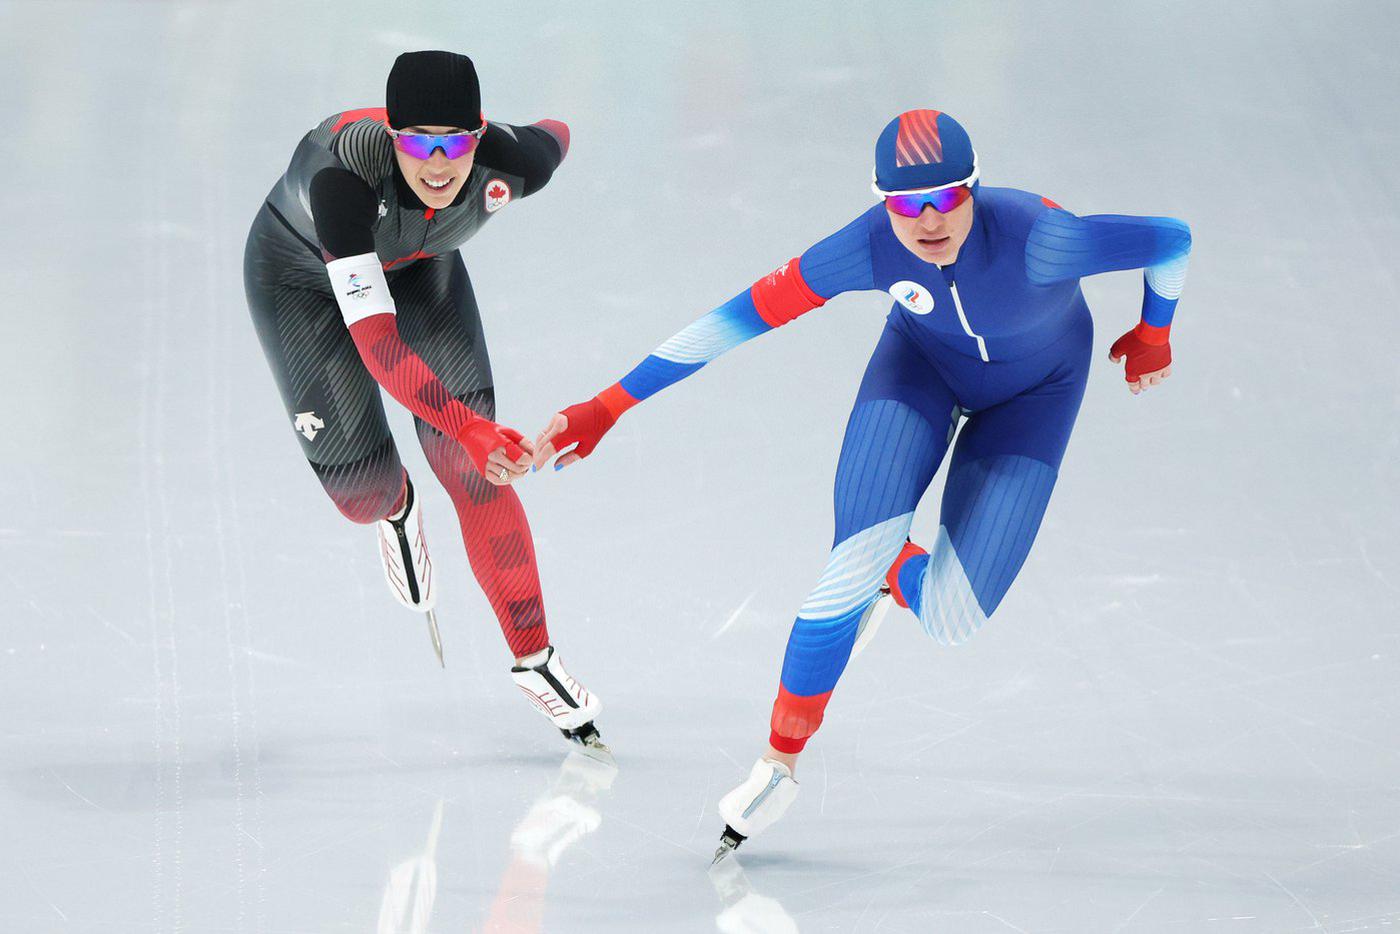 What sports do you enjoy. Speed Skating конькобежный спорт. Зимние игры конькобежный спорт. Коньки конькобежные 2022.